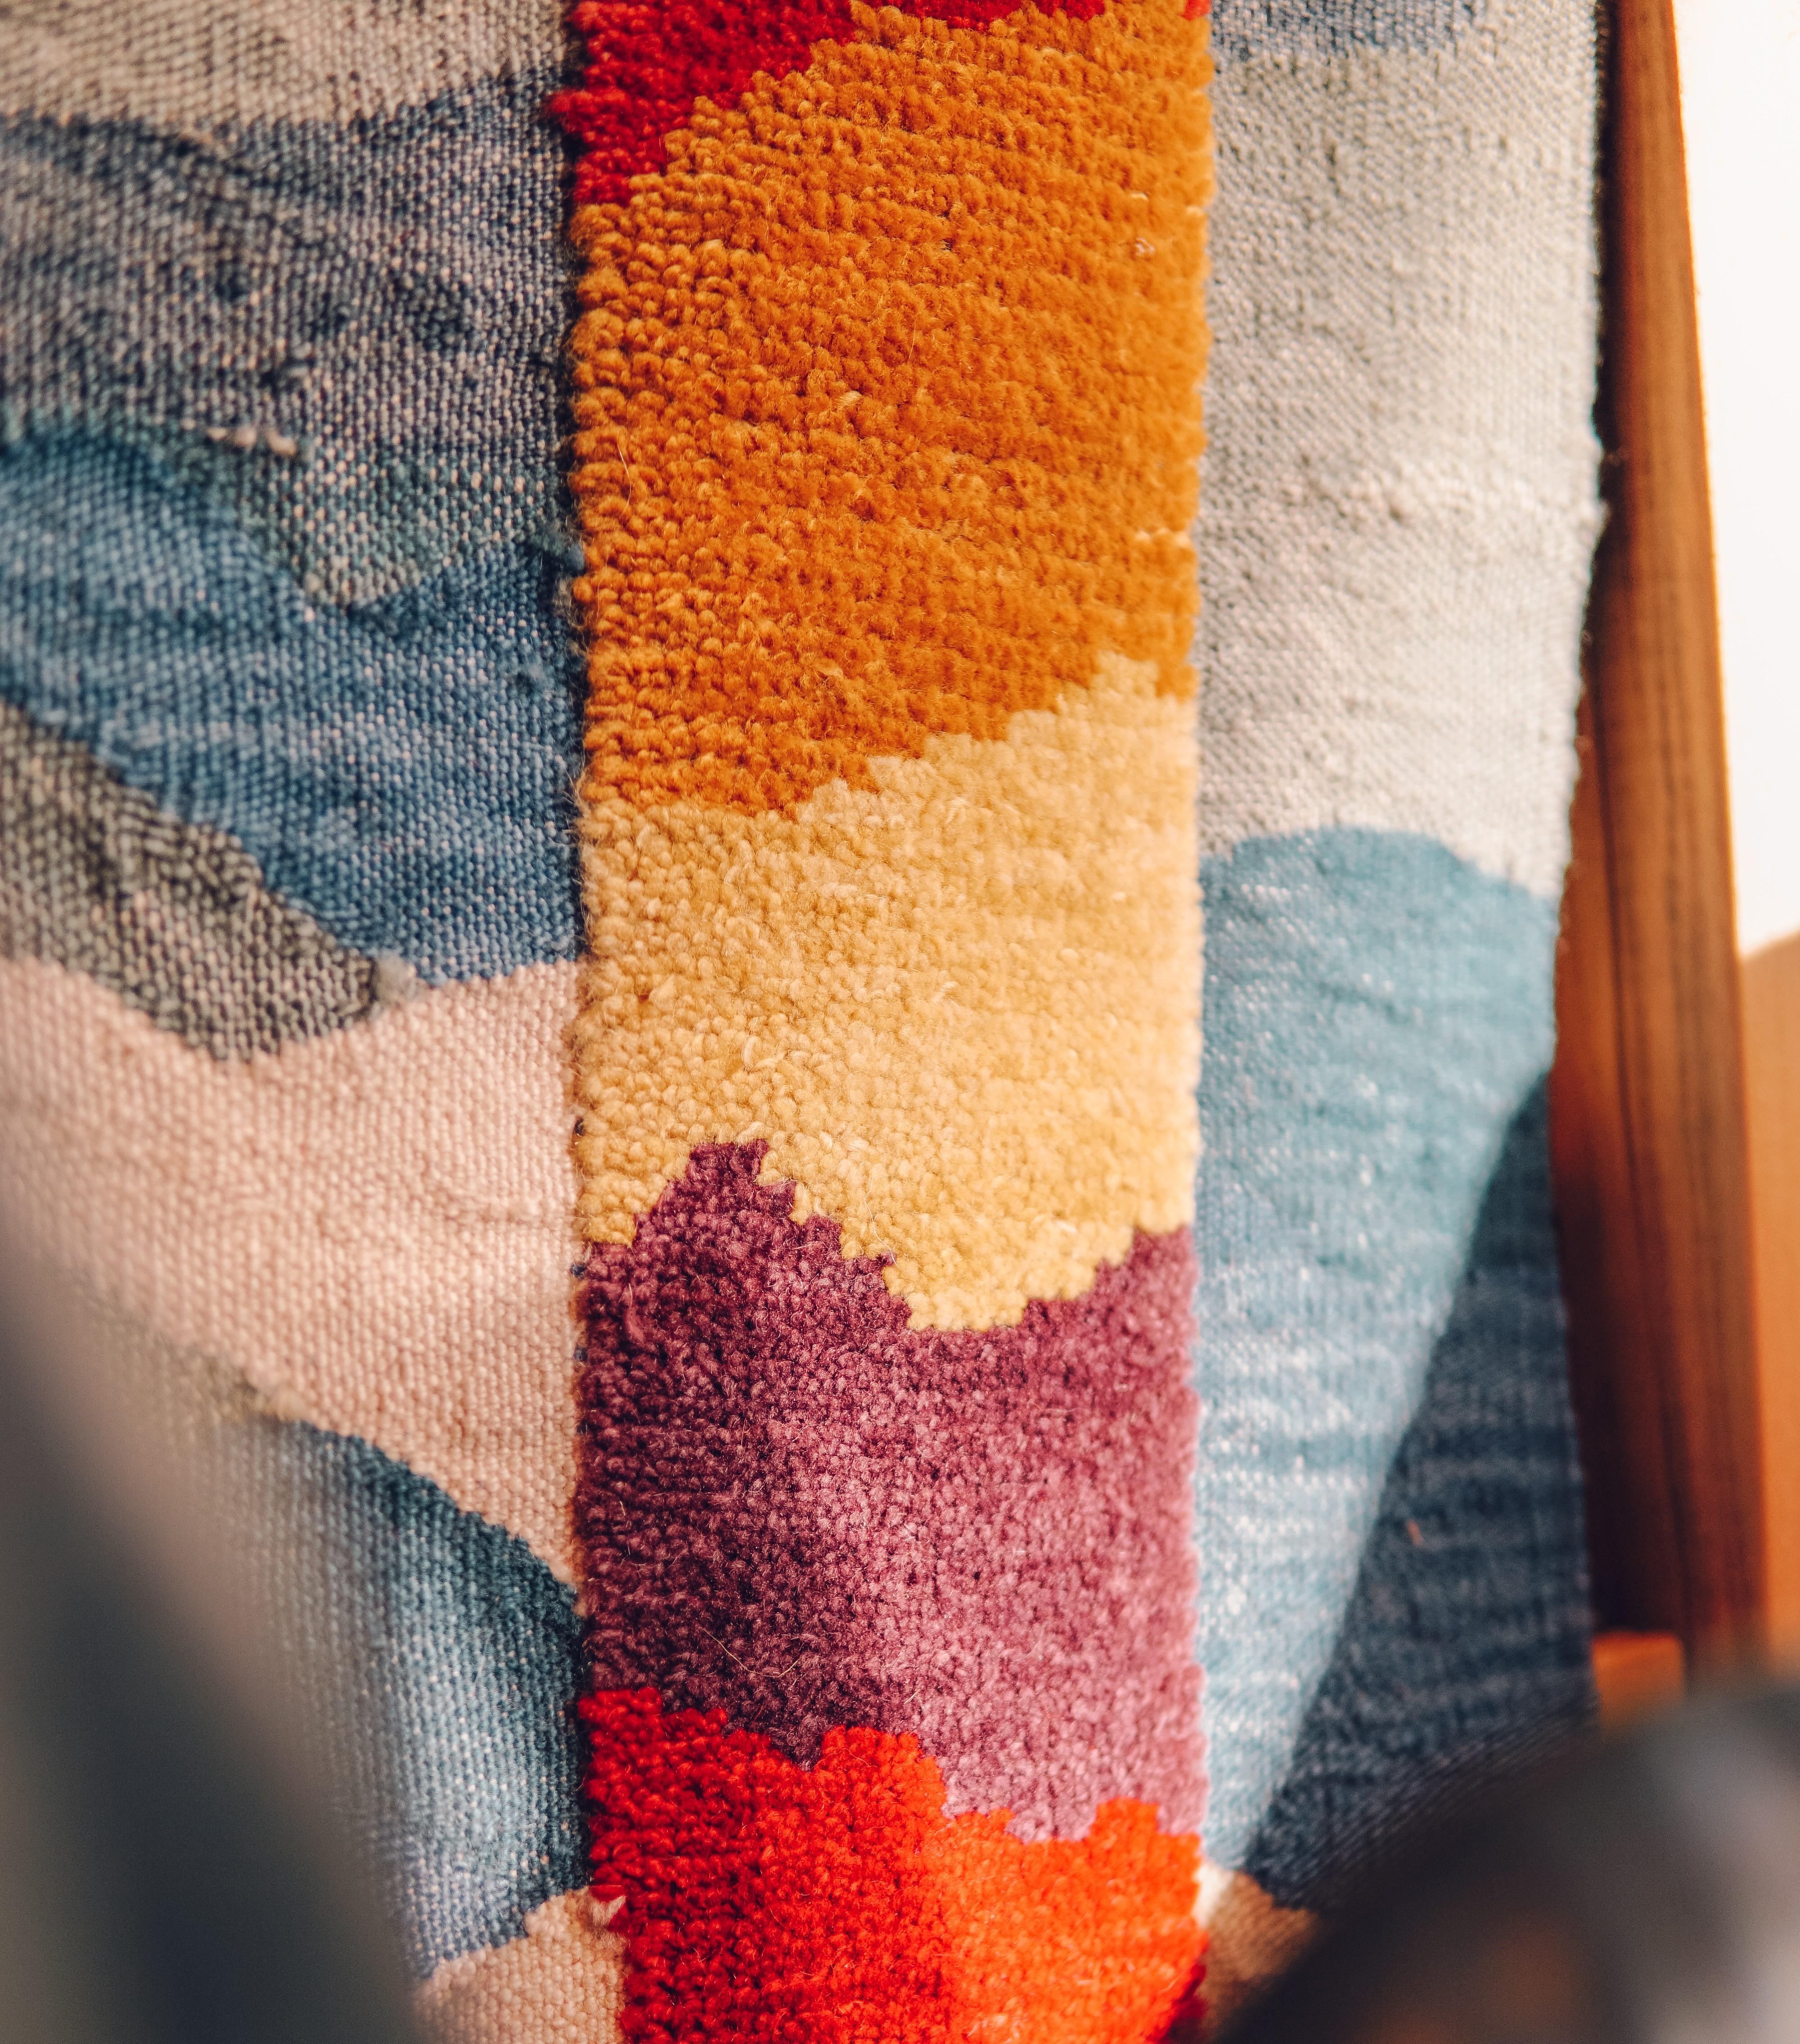 Rehaussez votre espace avec notre tapis Kaléidoscope Kilim tissé à la main, conçu et tissé avec talent sur un métier à tisser traditionnel. Pour ce tapis, nous avons utilisé deux techniques de tissage différentes : le tissage plat et le tissage